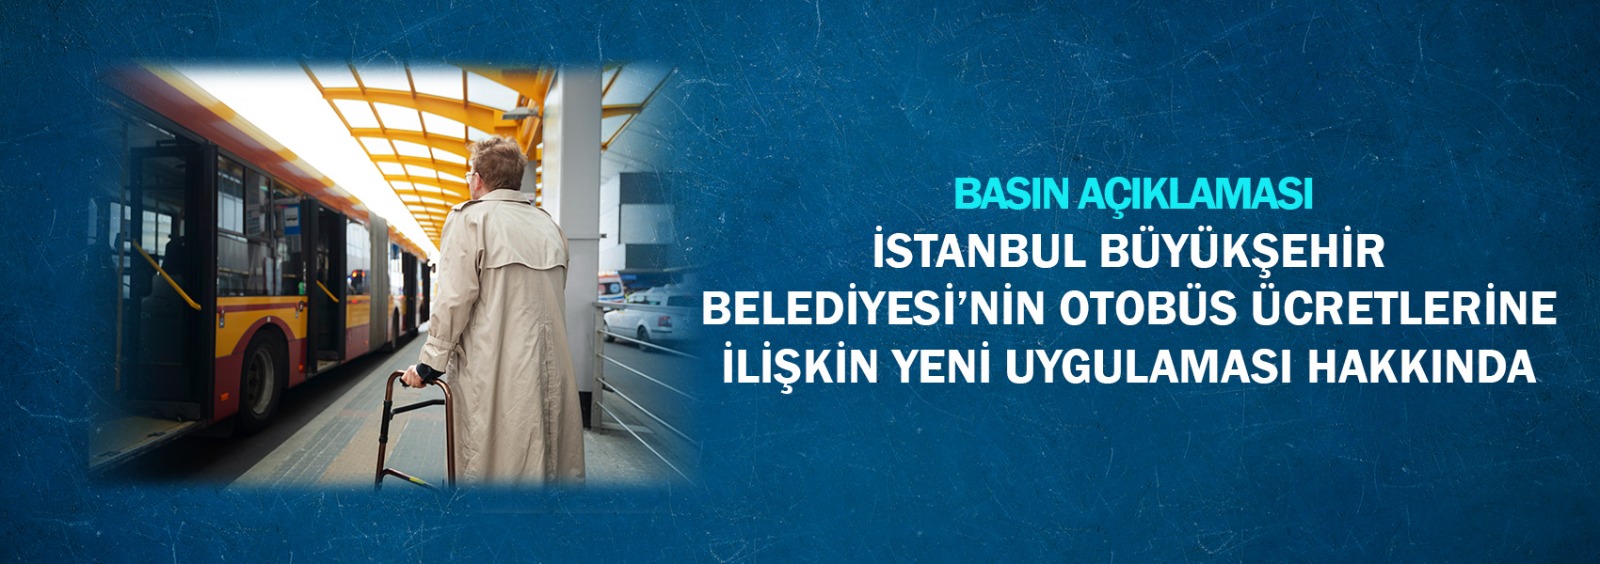 İstanbul Büyükşehir Belediyesi’nin Otobüs Ücretlerine  İlişkin Yeni Uygulaması Hakkında Basın Açıklaması